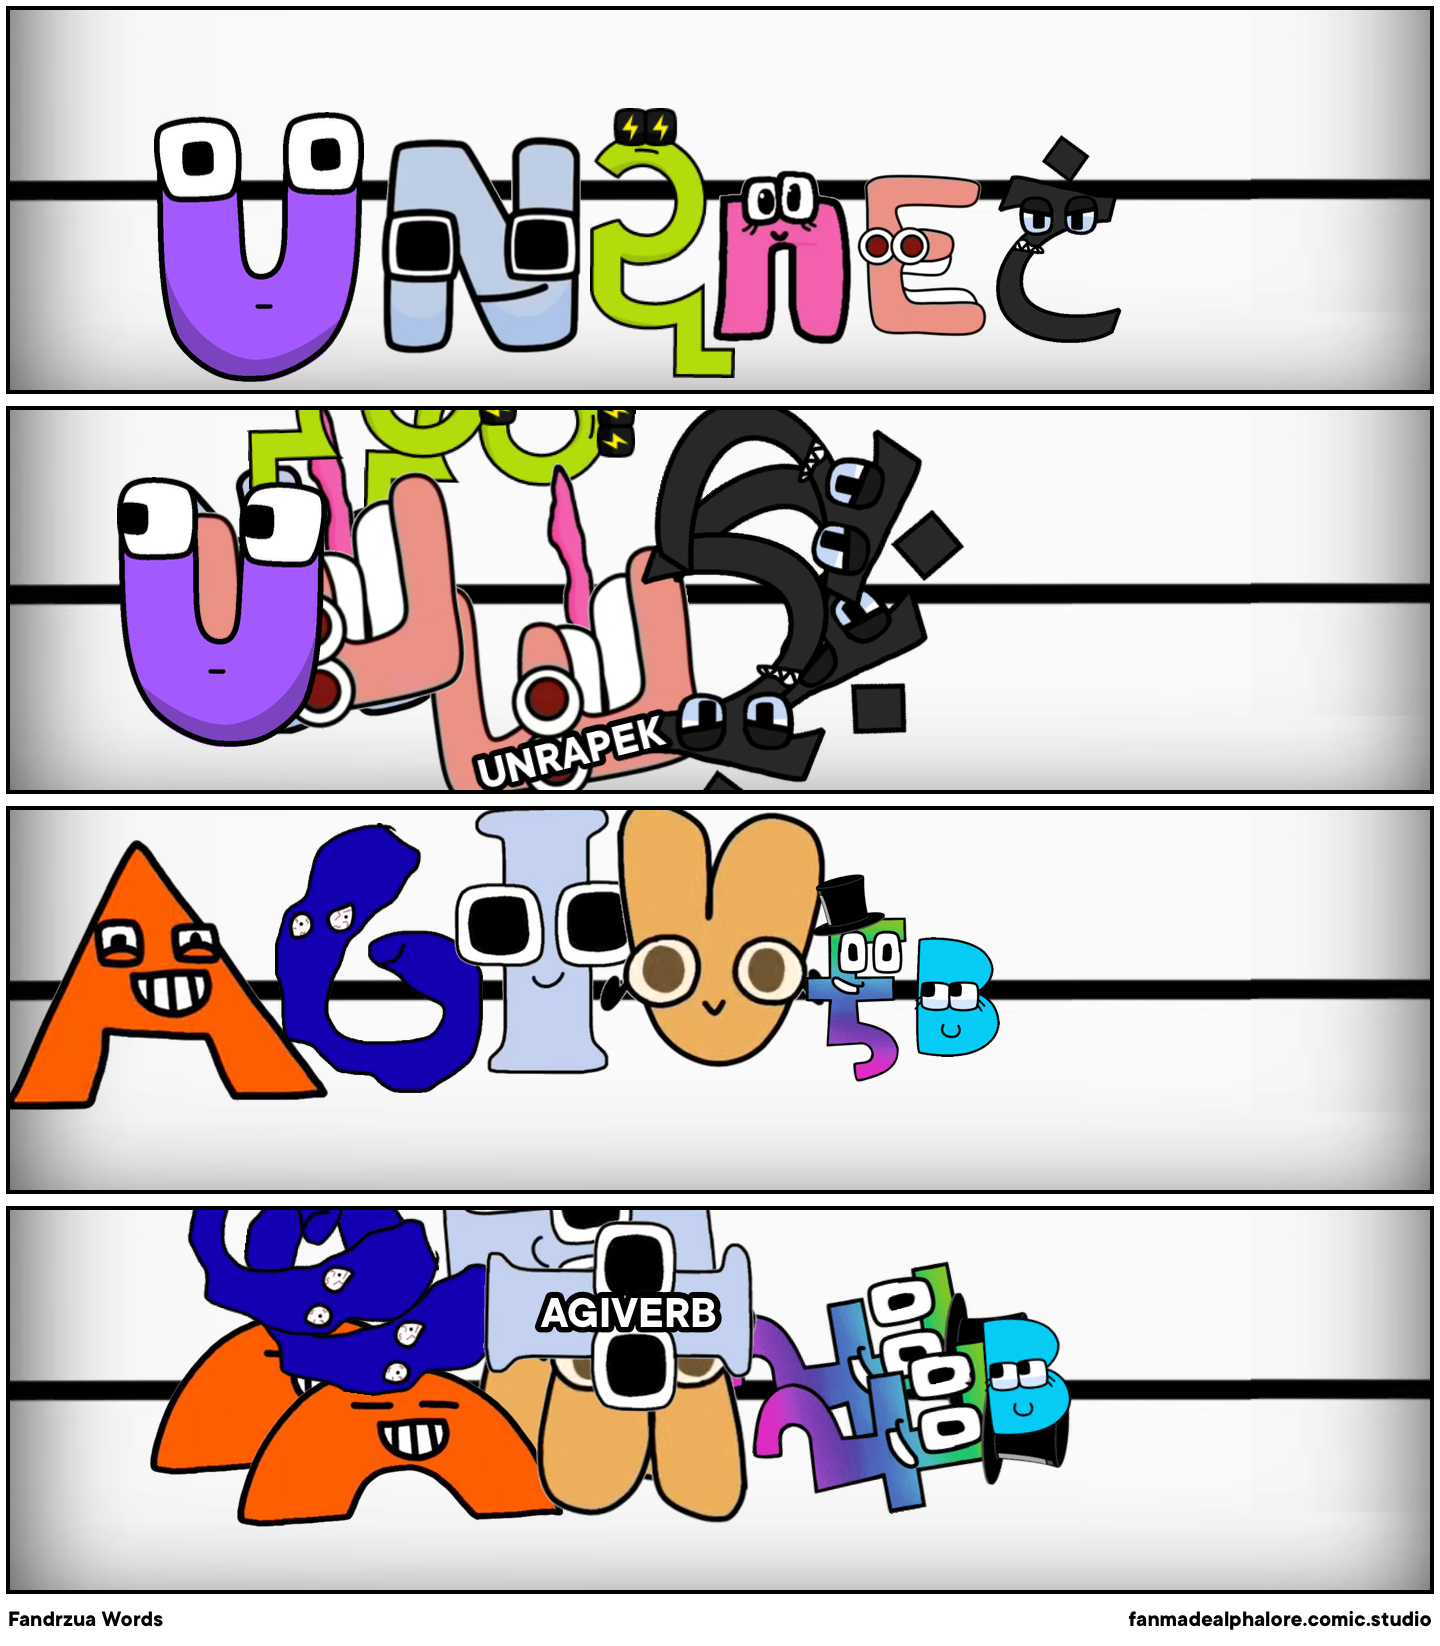 Ukrainian alphabet lore A-PE - Comic Studio